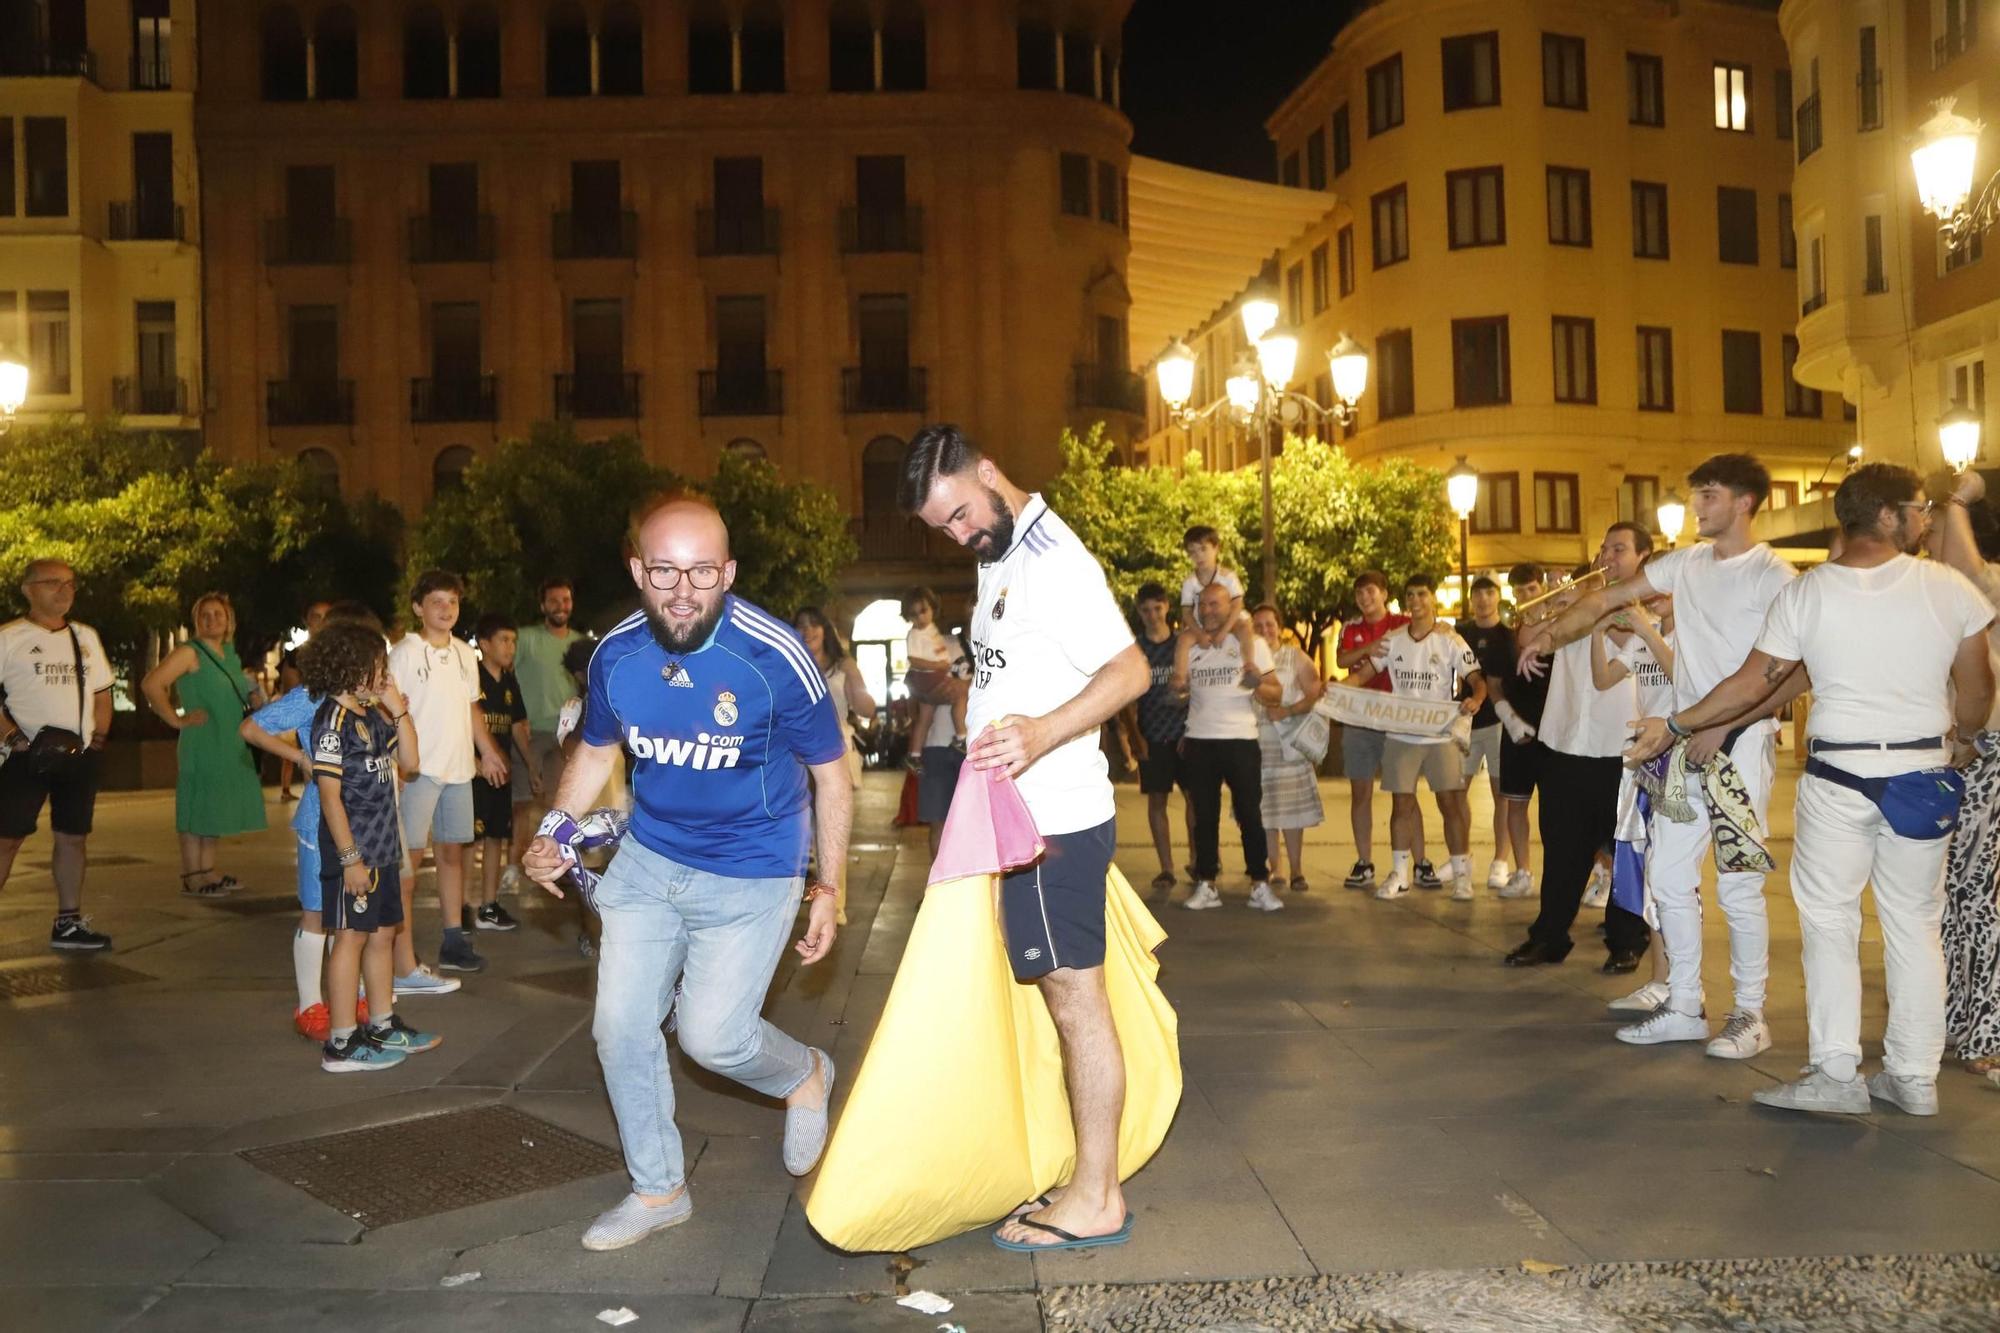 La celebración del título de Champions del Real Madrid en Córdoba, en imágenes